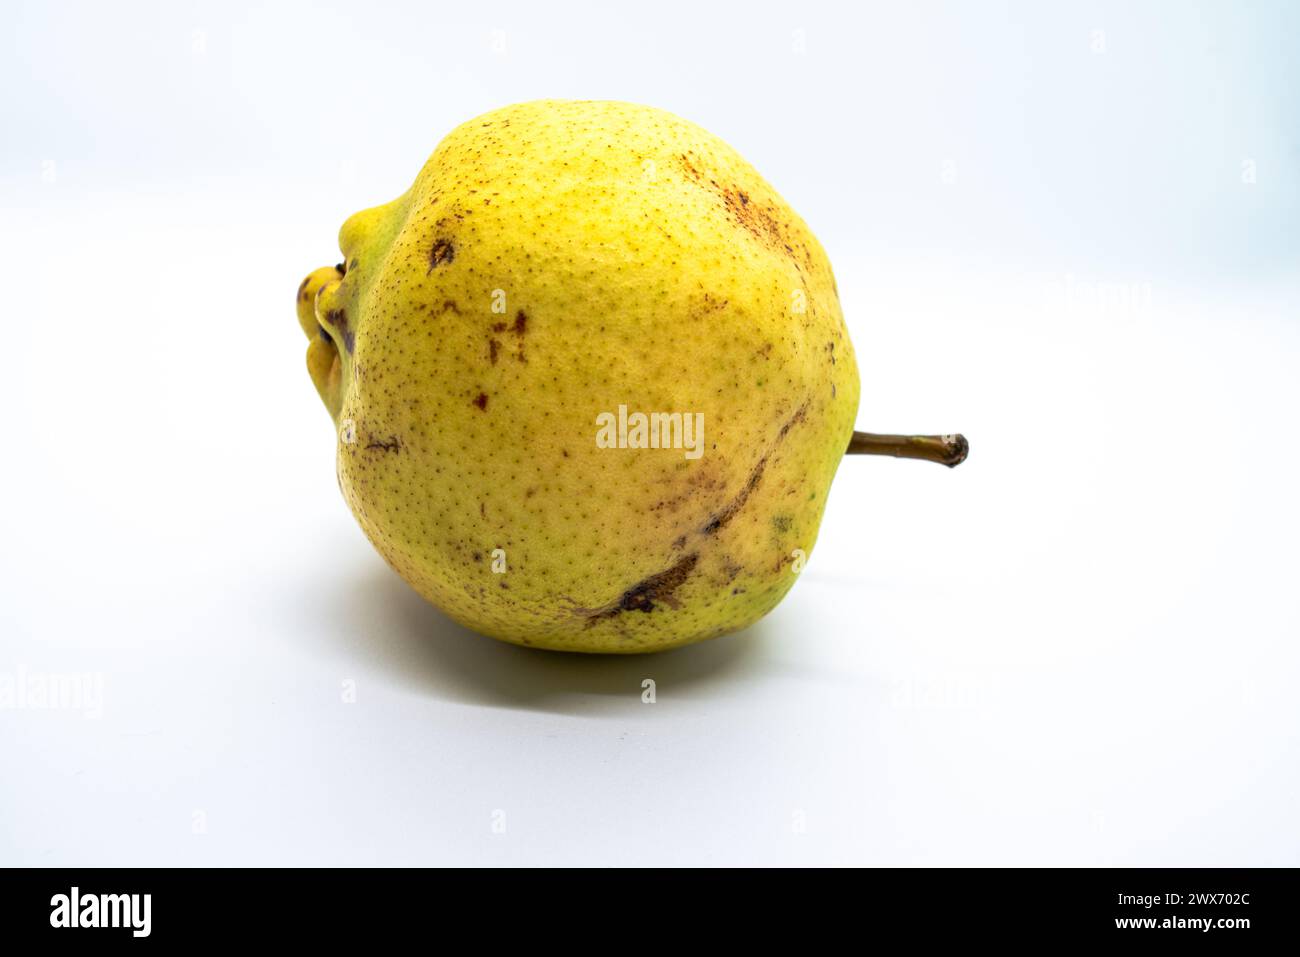 Ein Birnenweiss zeigt eine reife, saftige Birne, die vor Süße und Nährstoffen strotzt, ideal für einen gesunden Snack oder kulinarischen Gebrauch. Stockfoto